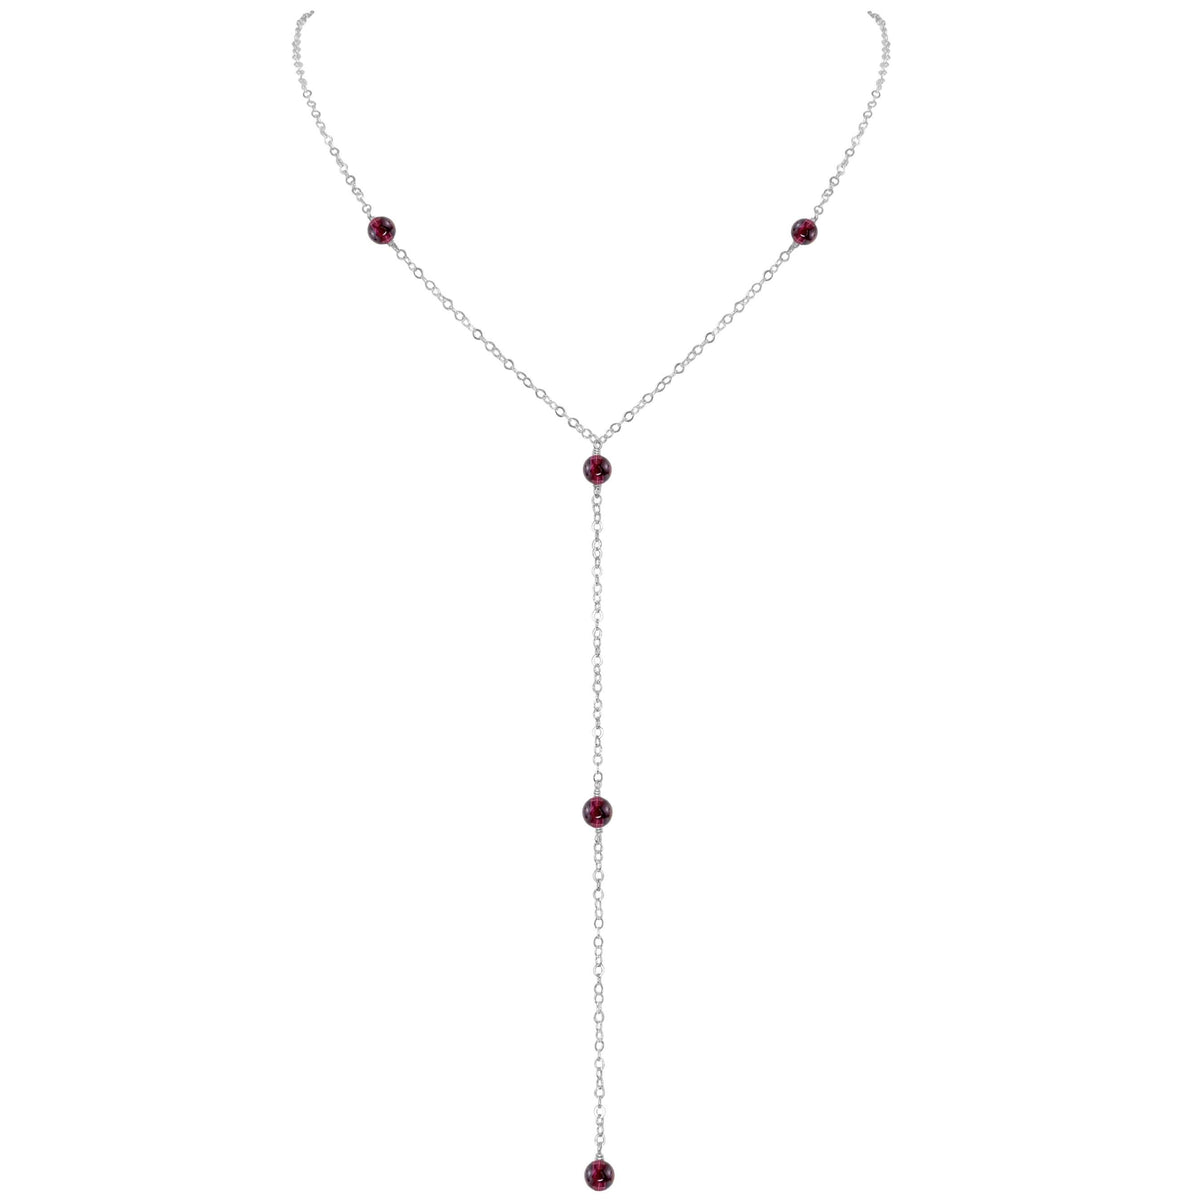 Dainty Y Necklace - Garnet - Sterling Silver - Luna Tide Handmade Jewellery